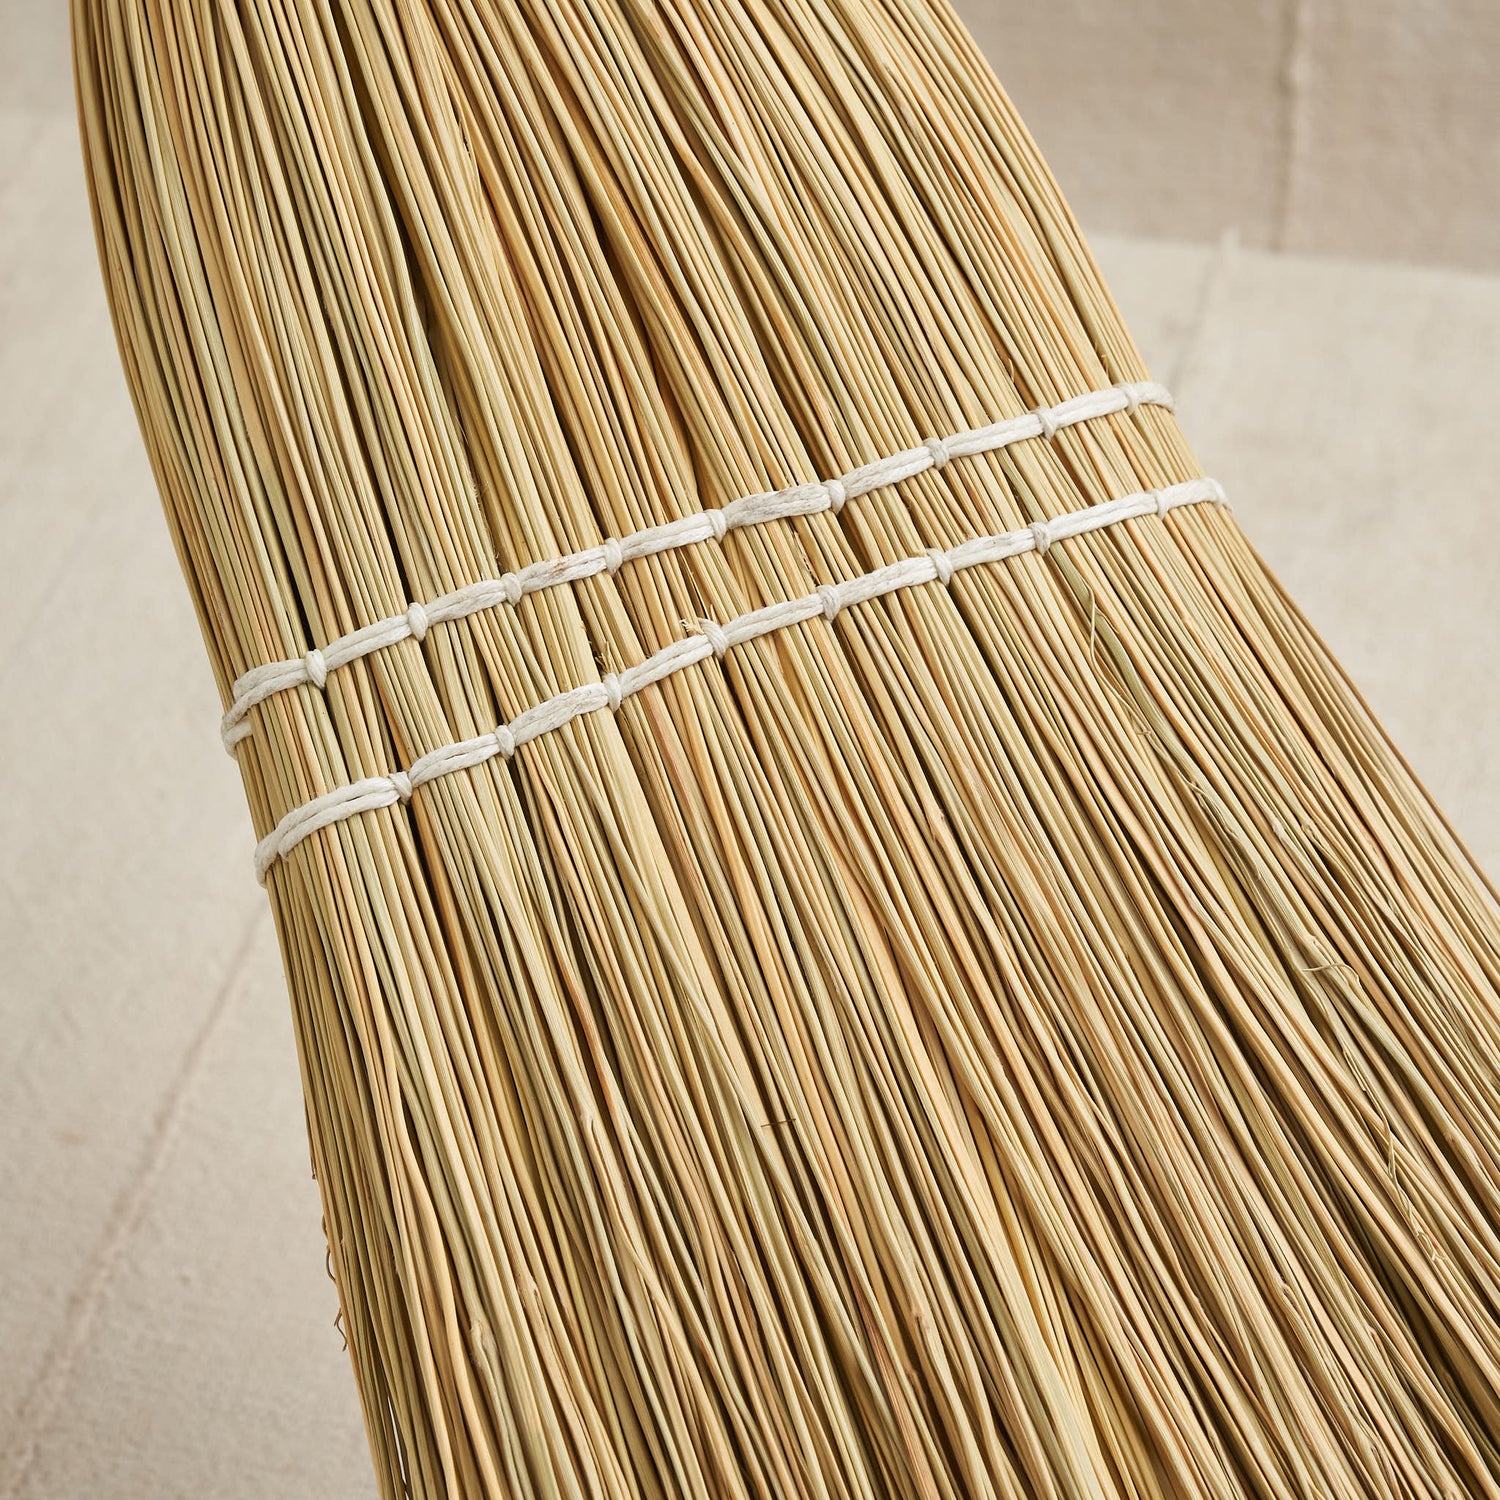 Shaker Broom, Natural Bristle